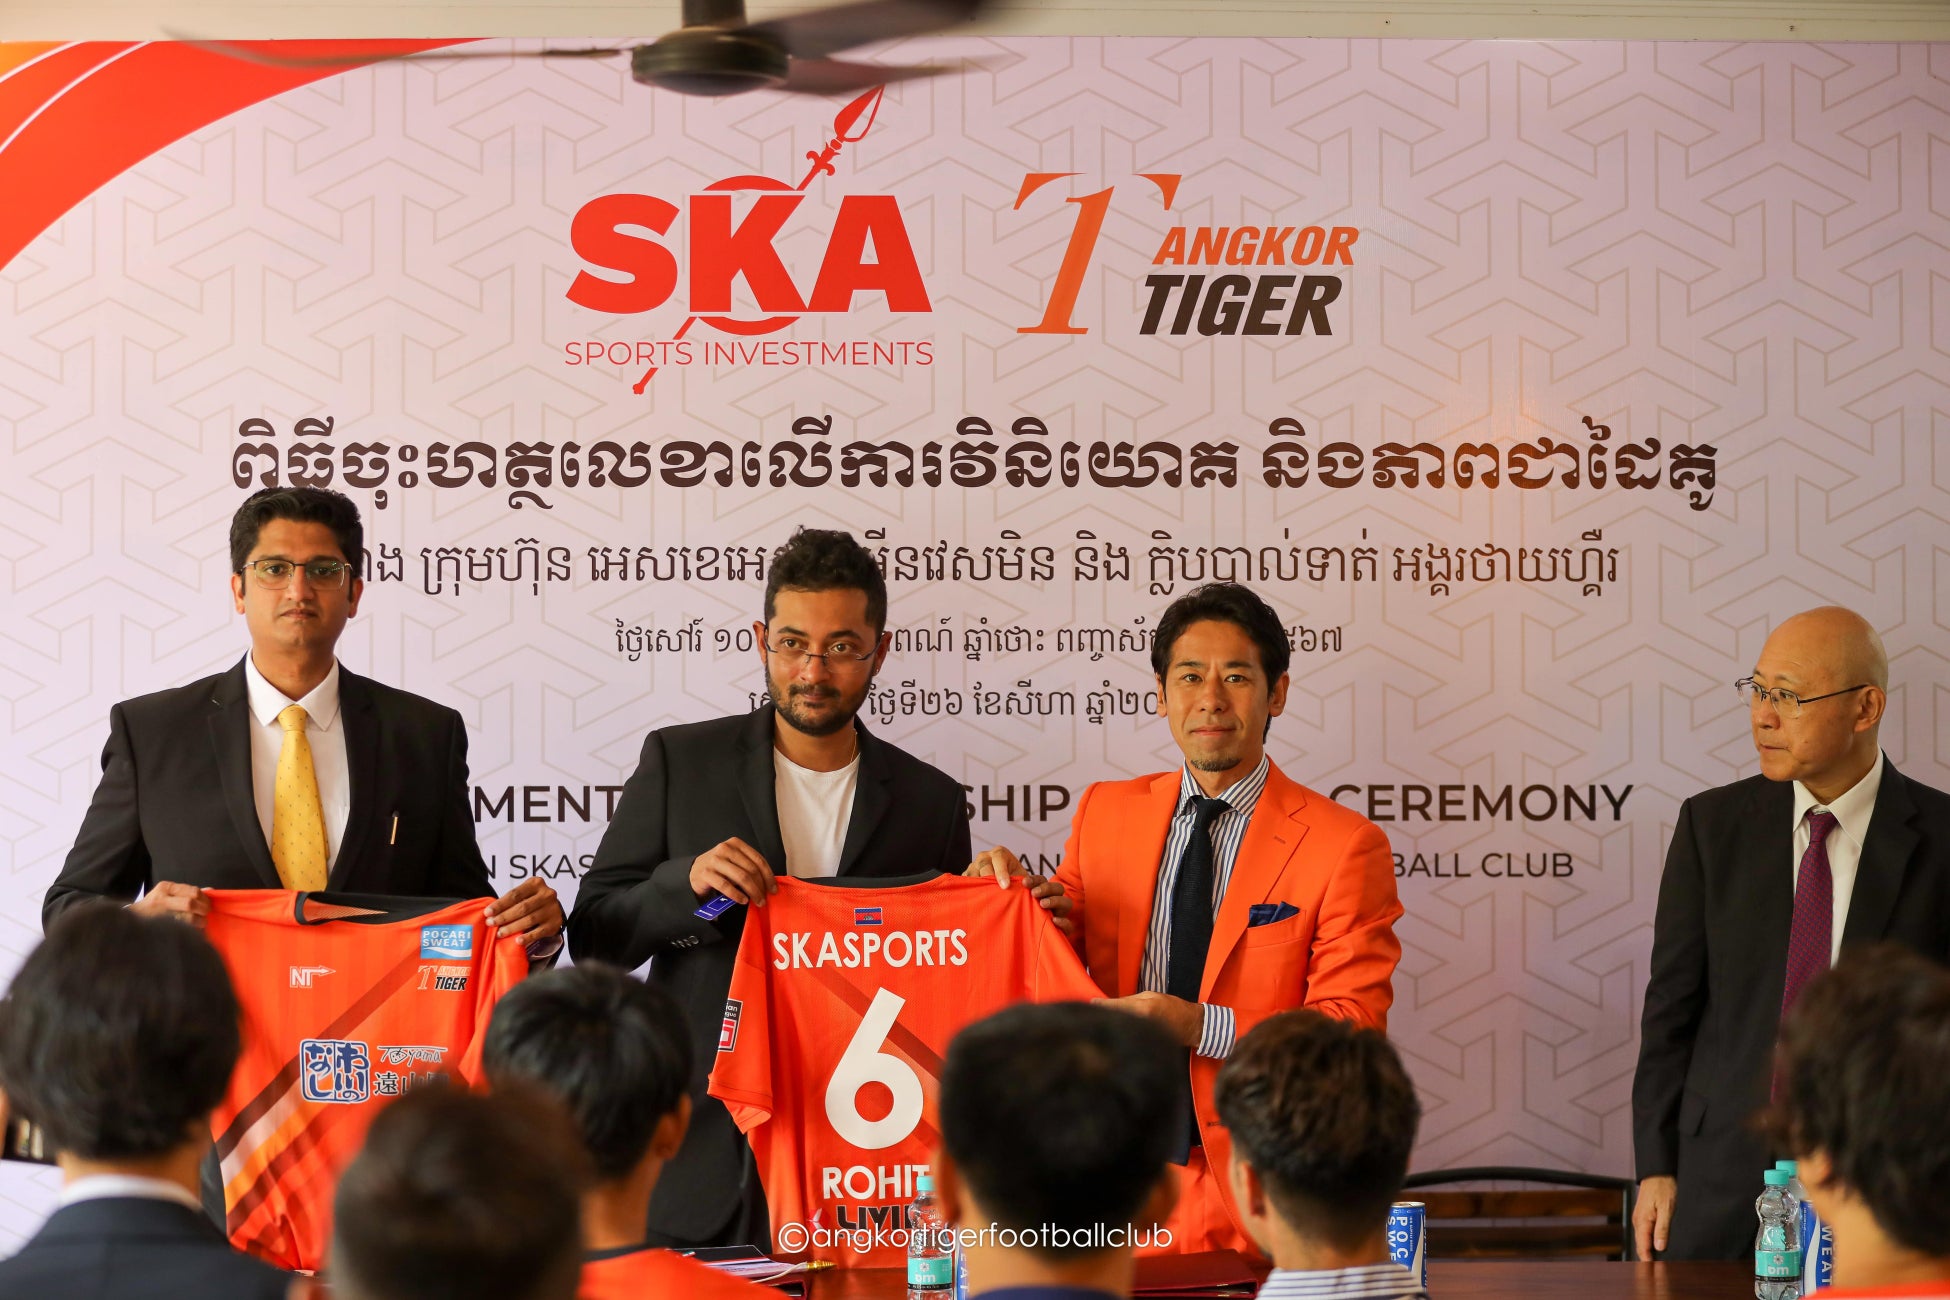 カンボジアプレミアリーグ所属アンコールタイガーFCがインドのSkaSports Investment社からの出資とパートナーシップ締結を発表